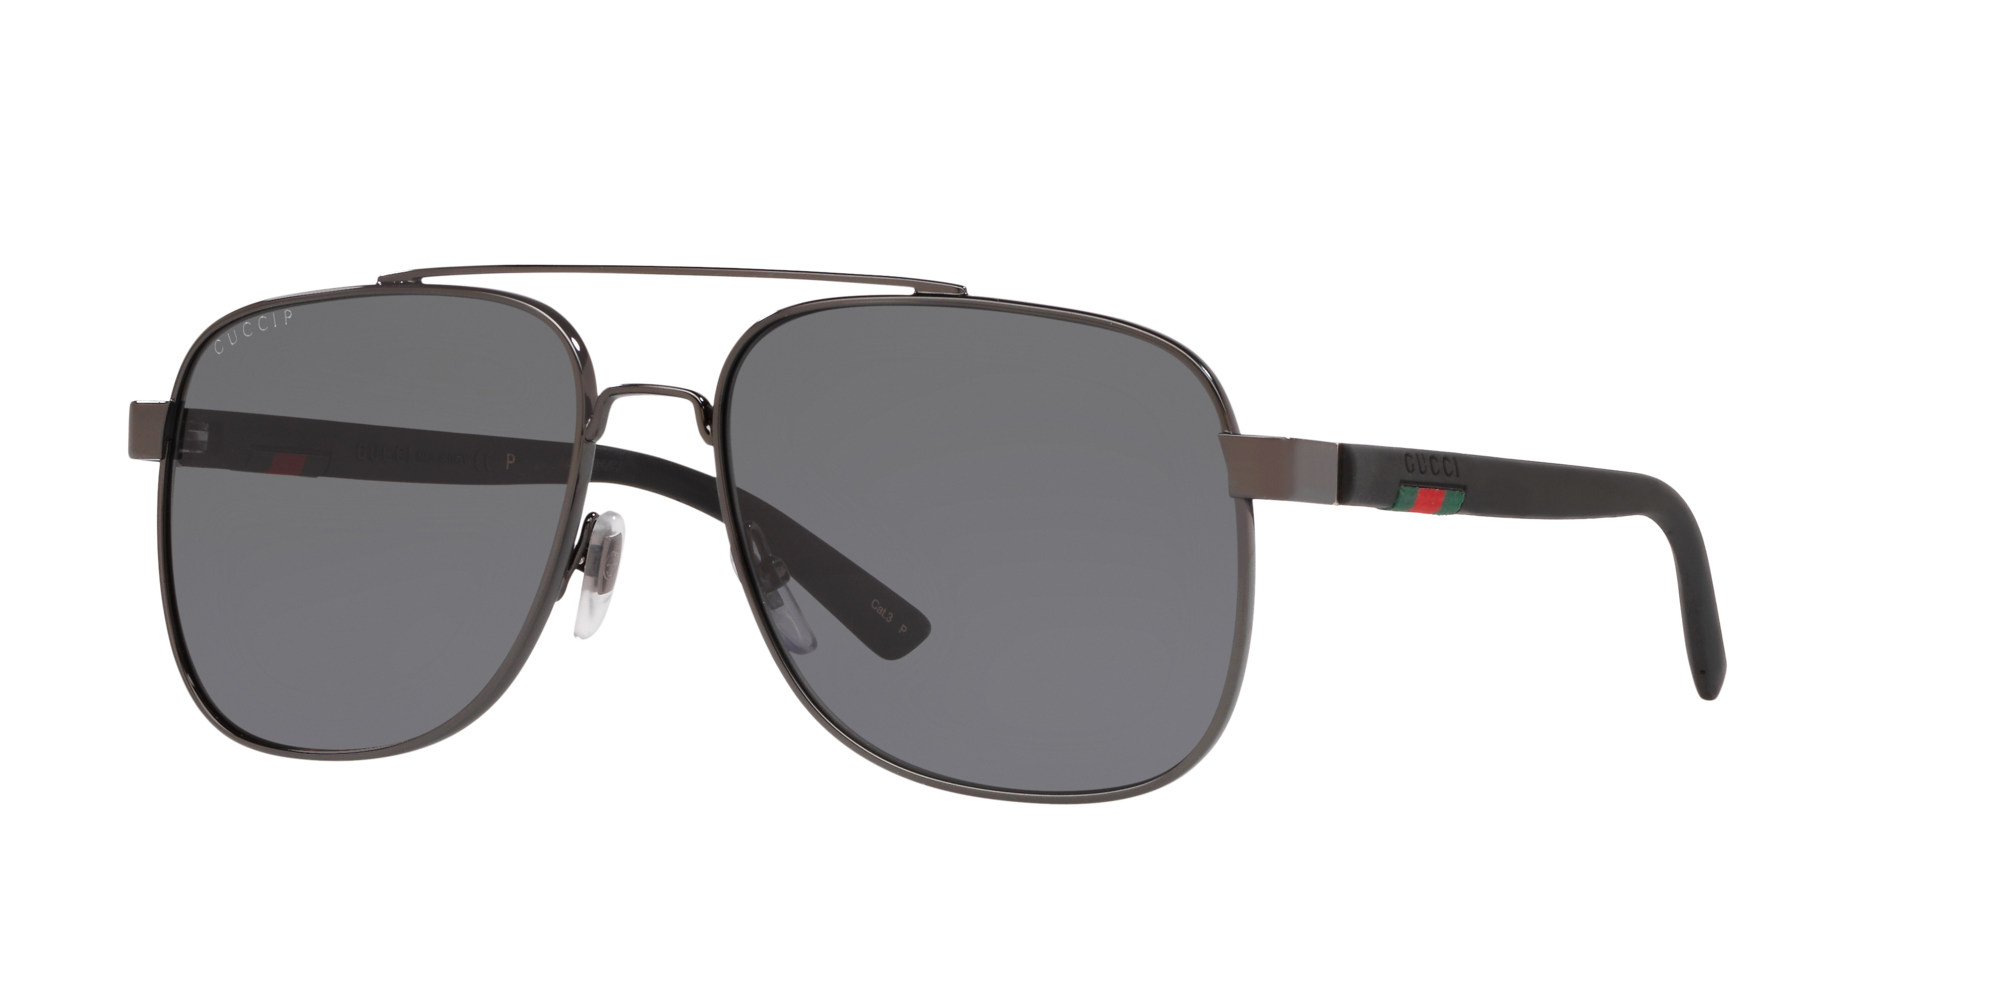 gucci polarized aviator sunglasses